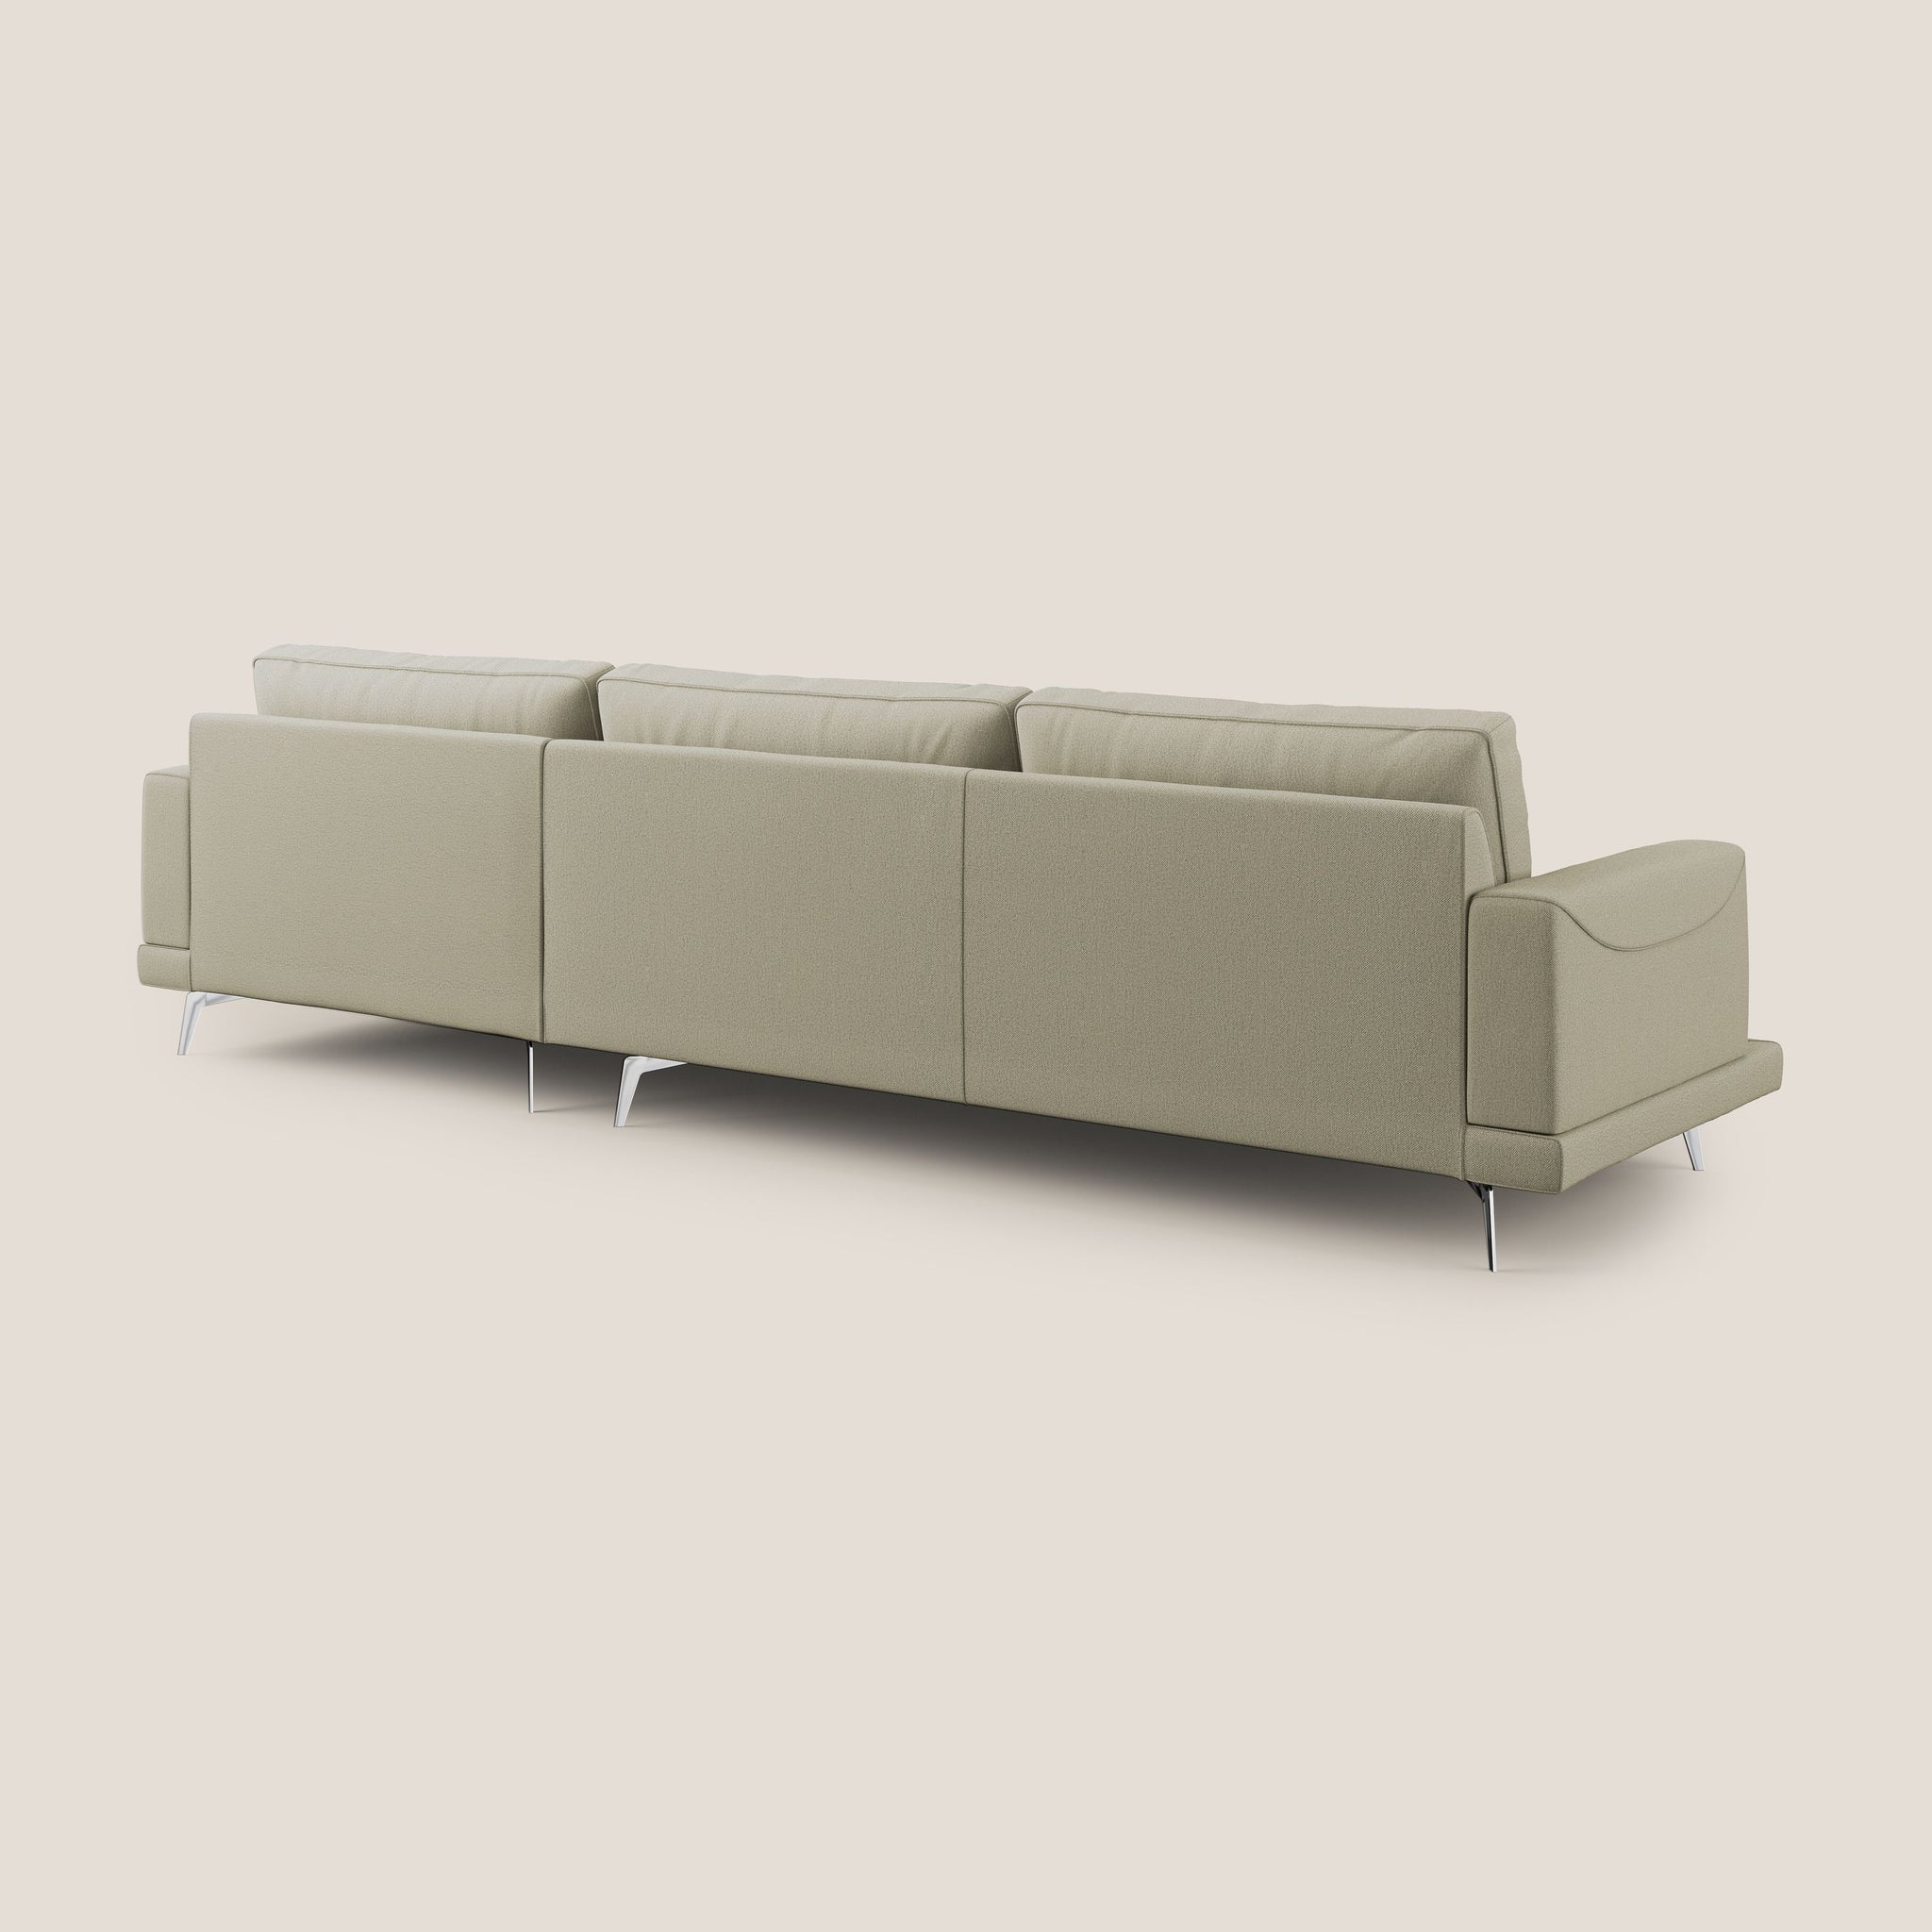 Dorian divano moderno angolare con penisola in tessuto morbido antimacchia T05